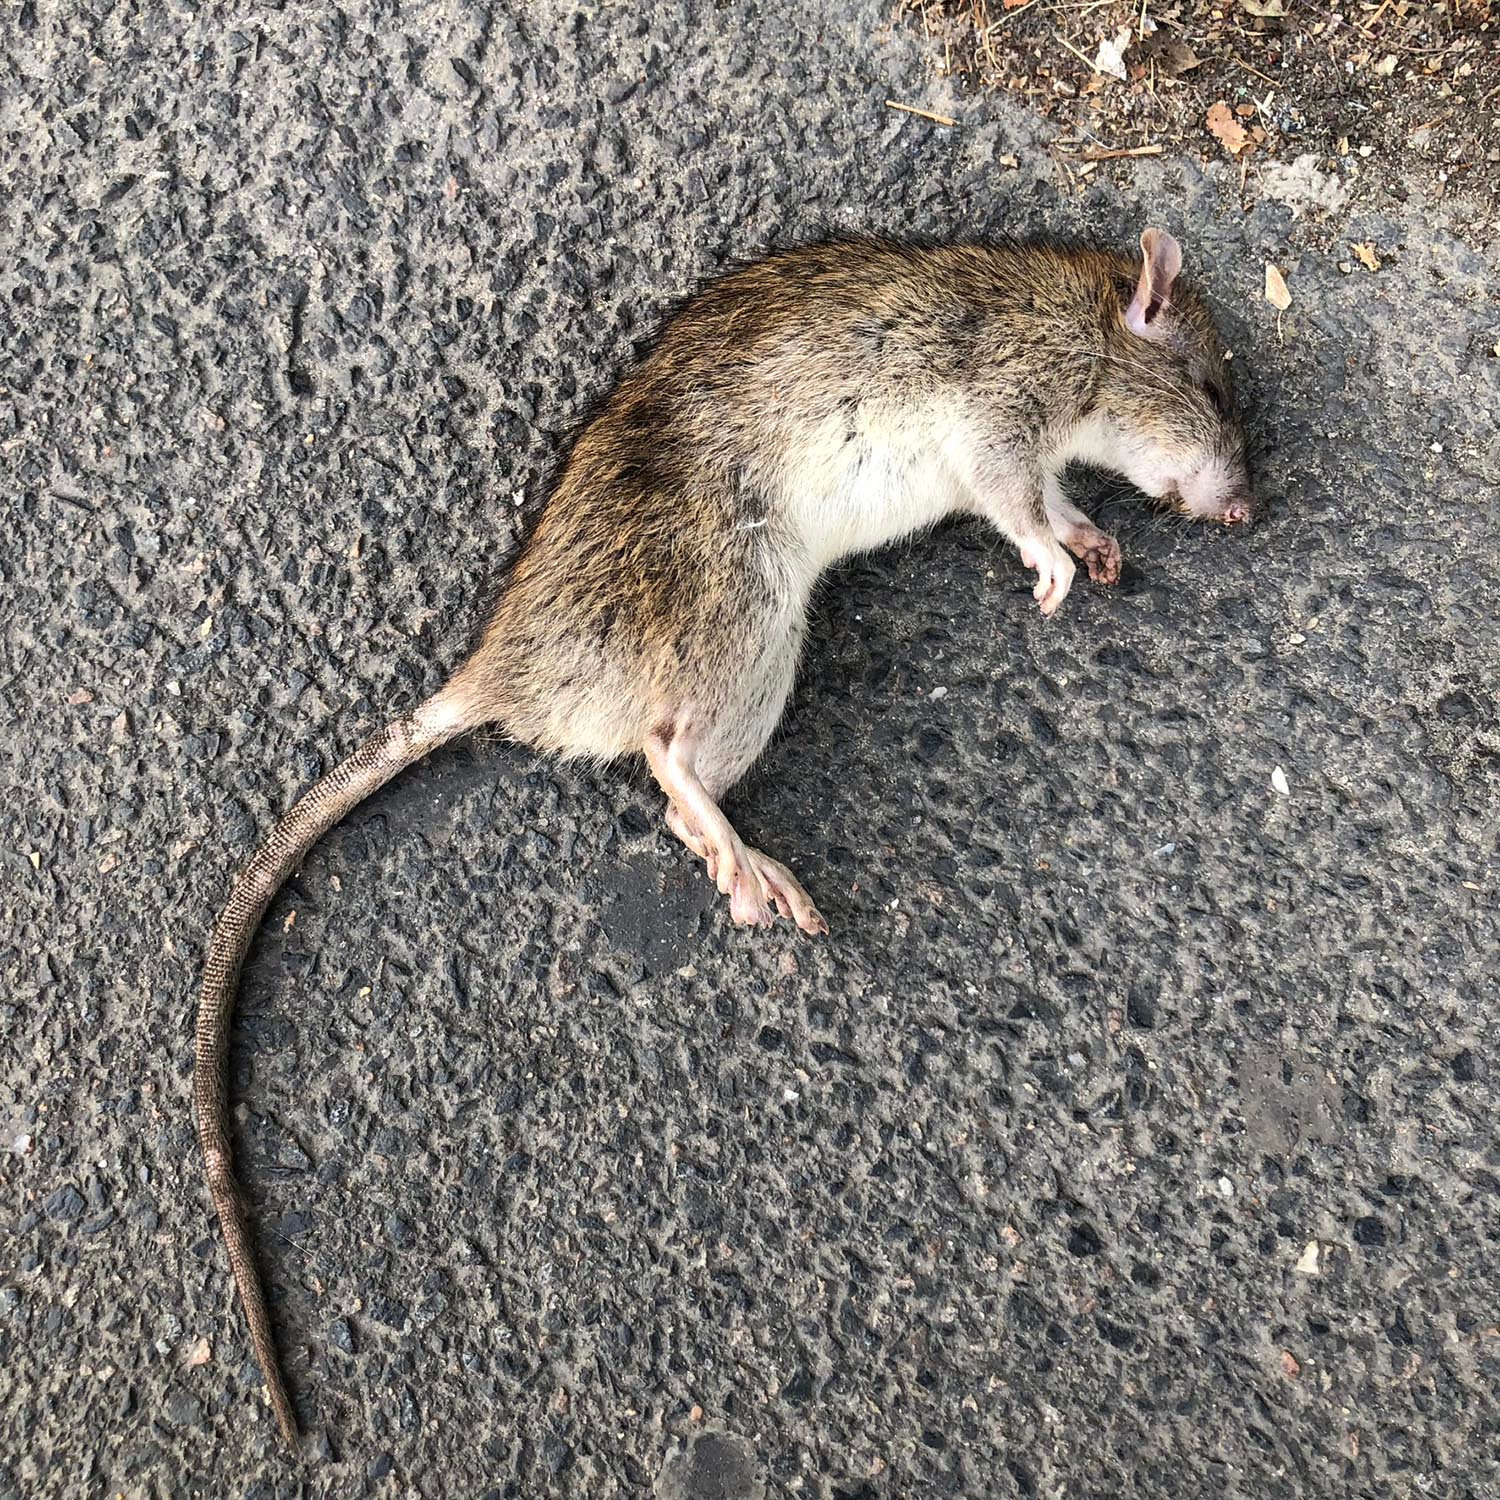 Comme un rat mort ?